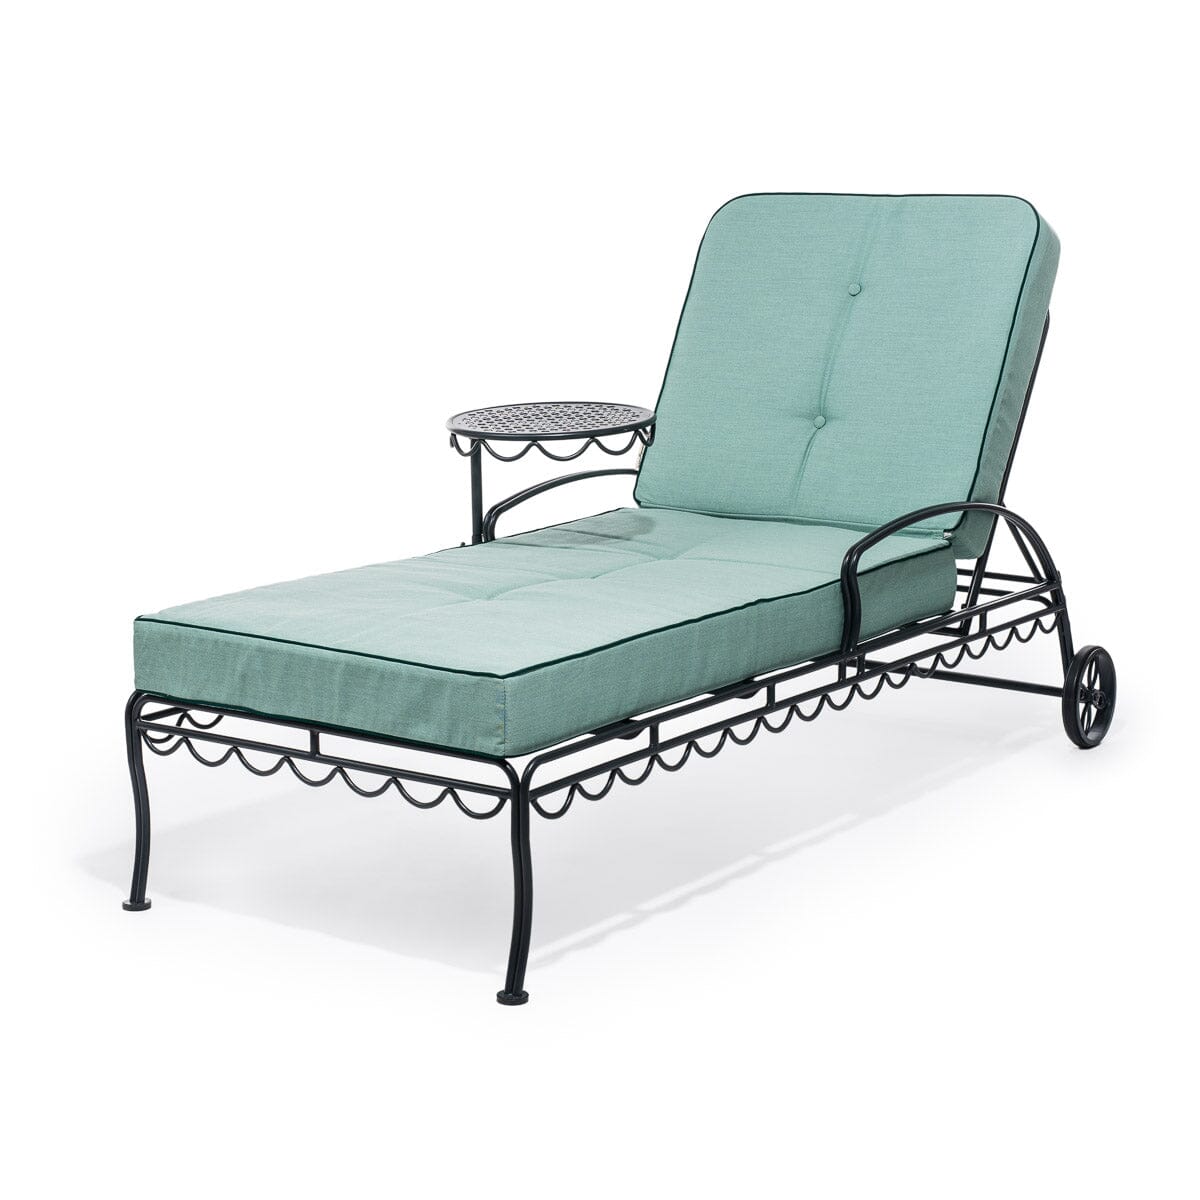 The Al Fresco Sun Lounger Cushion - Rivie Green Al Fresco Sun Lounger Cushions Business & Pleasure Co 